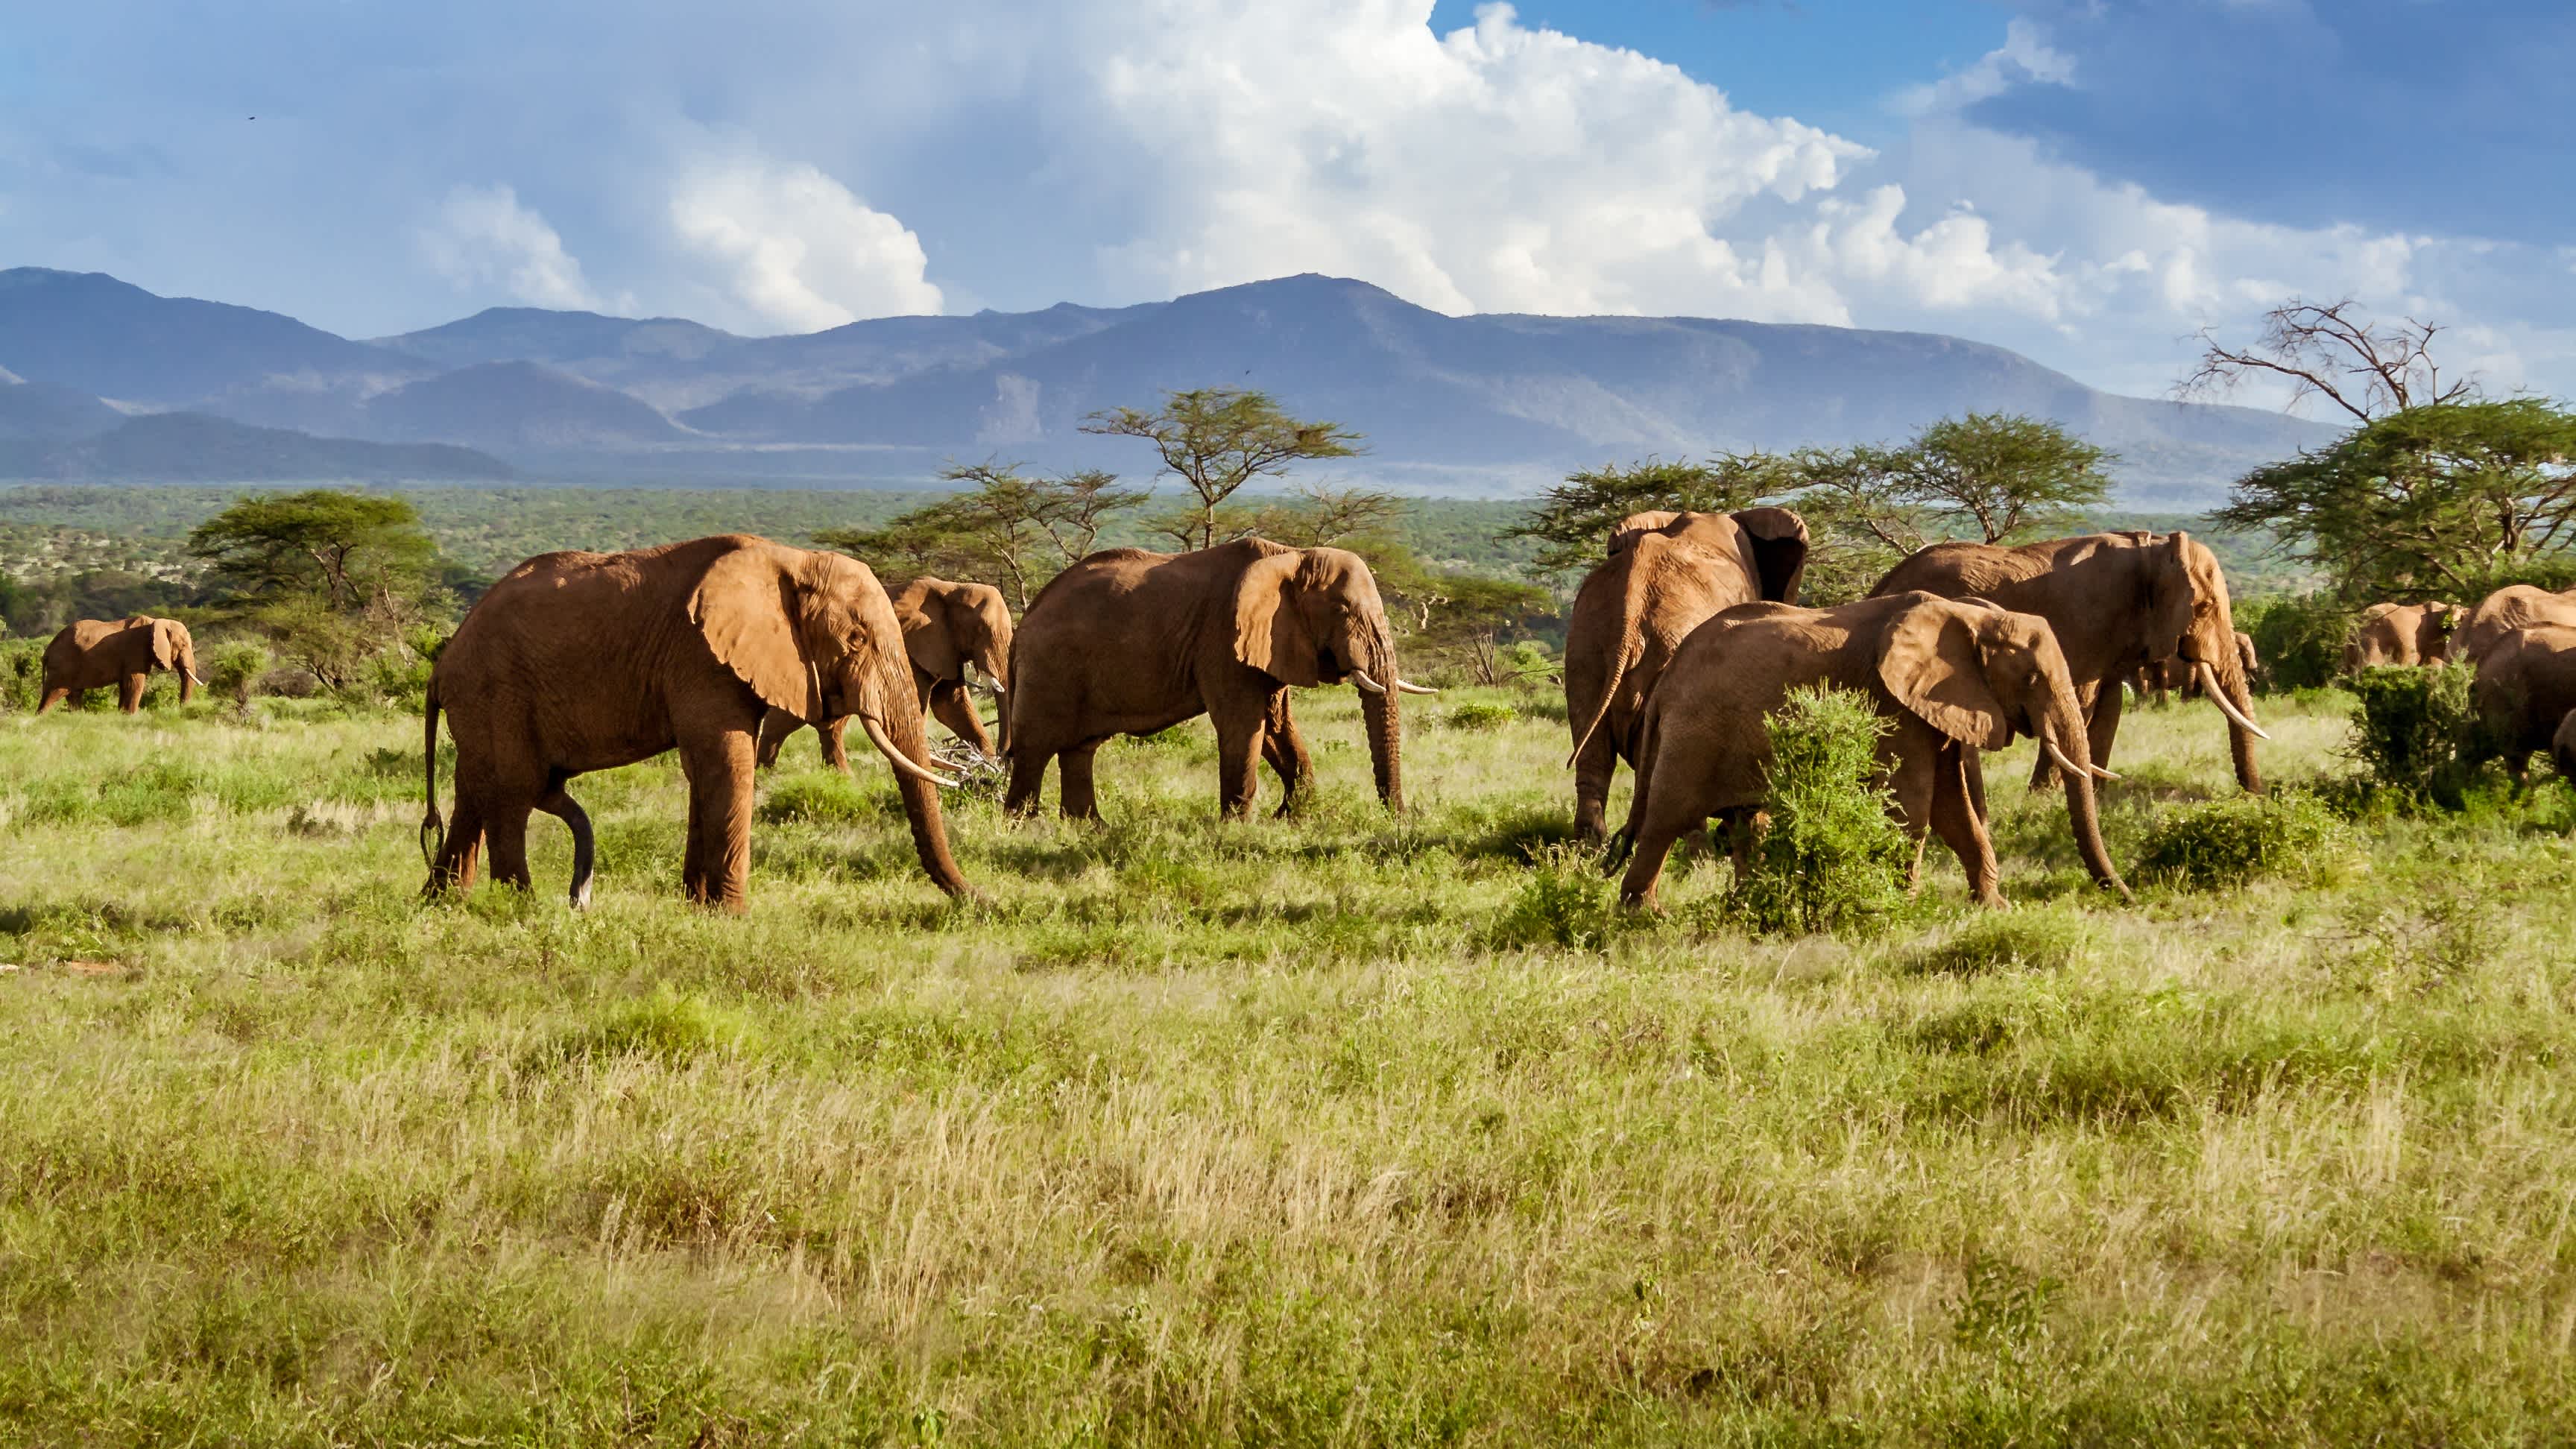 Troupeau d'éléphants dans la savane africaine, Afrique du Sud

